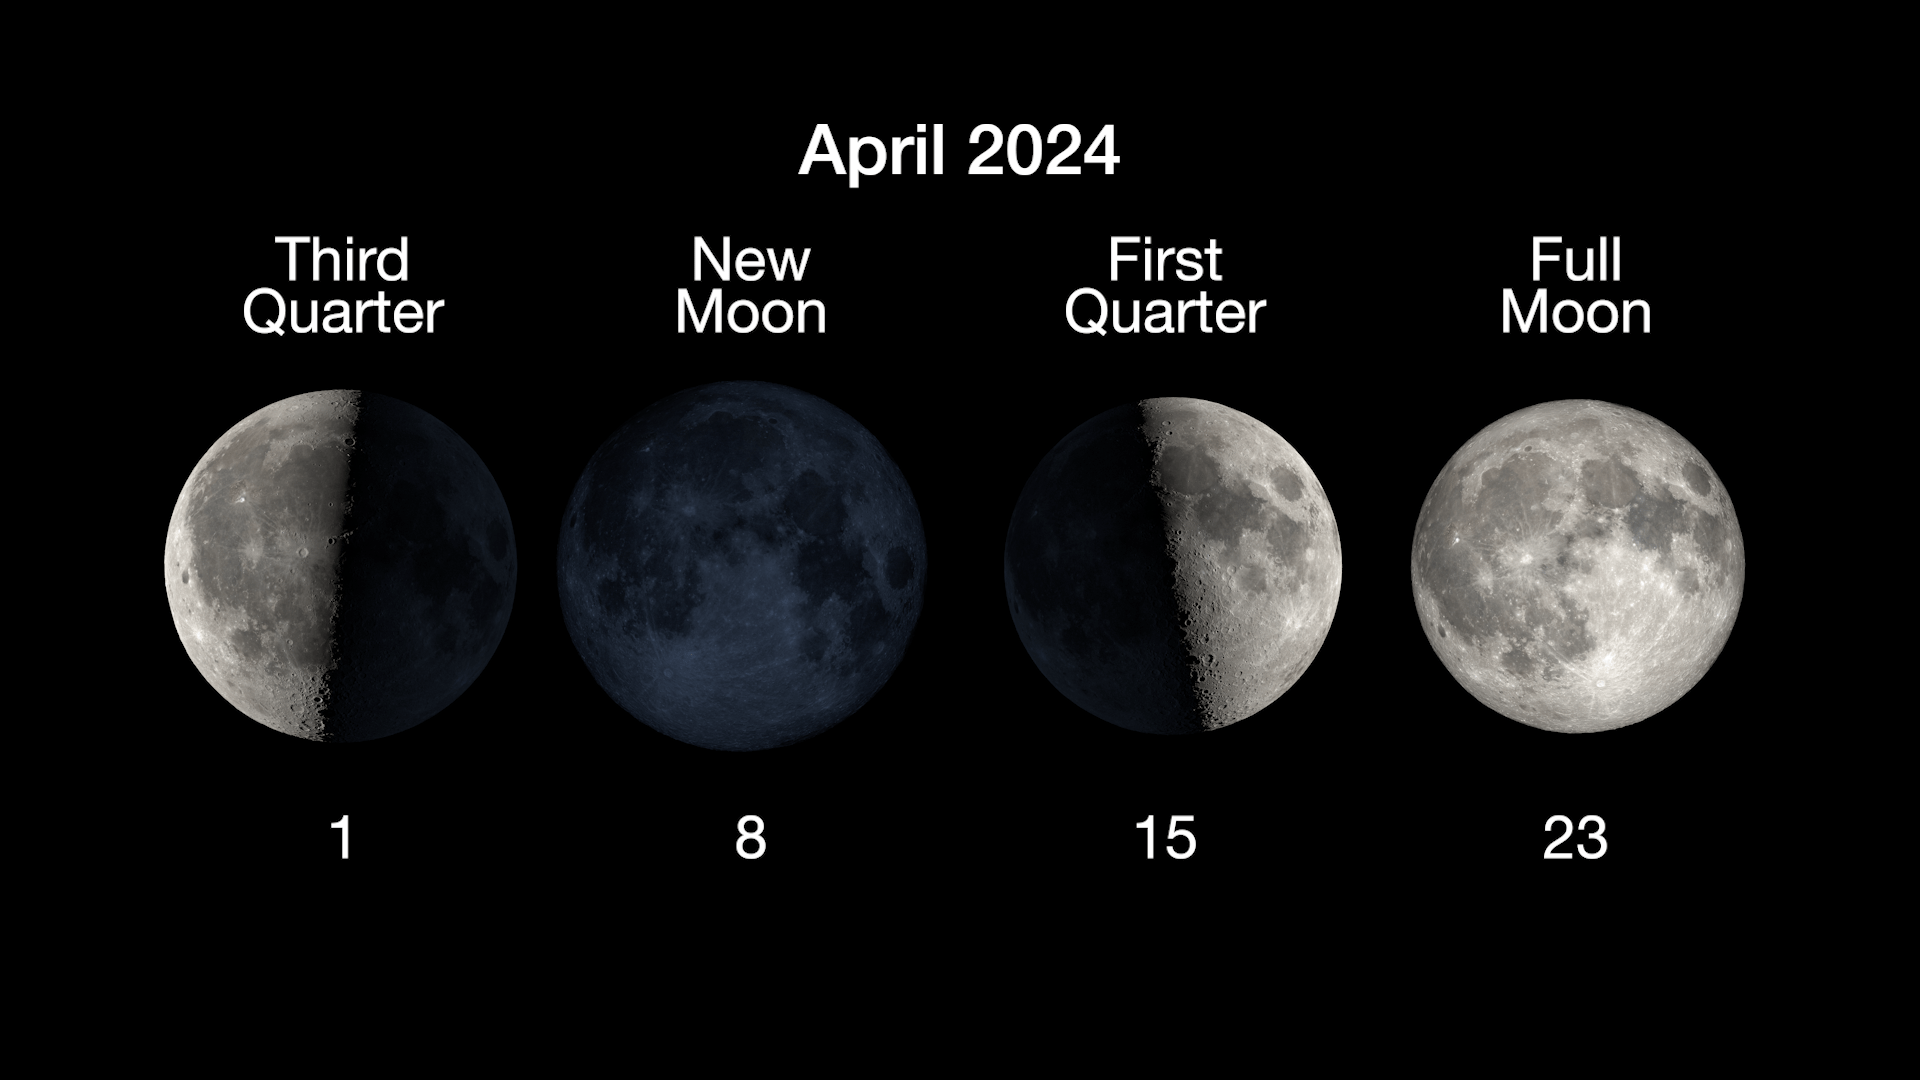 Główne fazy Księżyca przedstawiono w poziomym rzędzie, z trzecią kwadrą księżyca 1 kwietnia, nowiem 8 kwietnia, pierwszą kwadrą 15 kwietnia i pełnią księżyca 23 kwietnia.